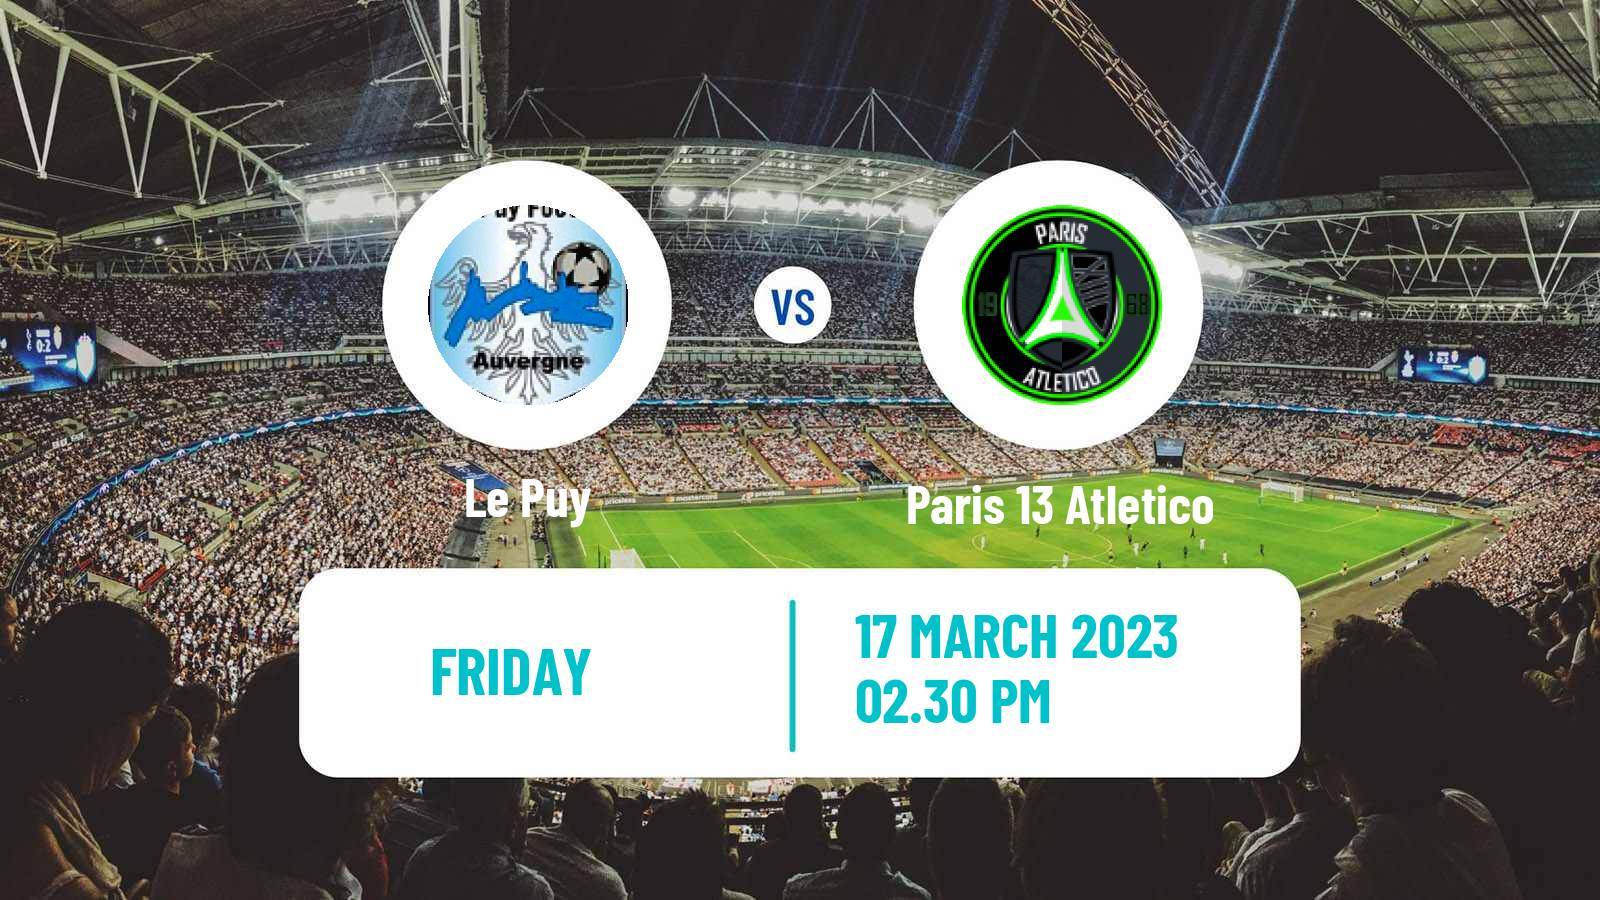 Soccer French National League Le Puy - Paris 13 Atletico